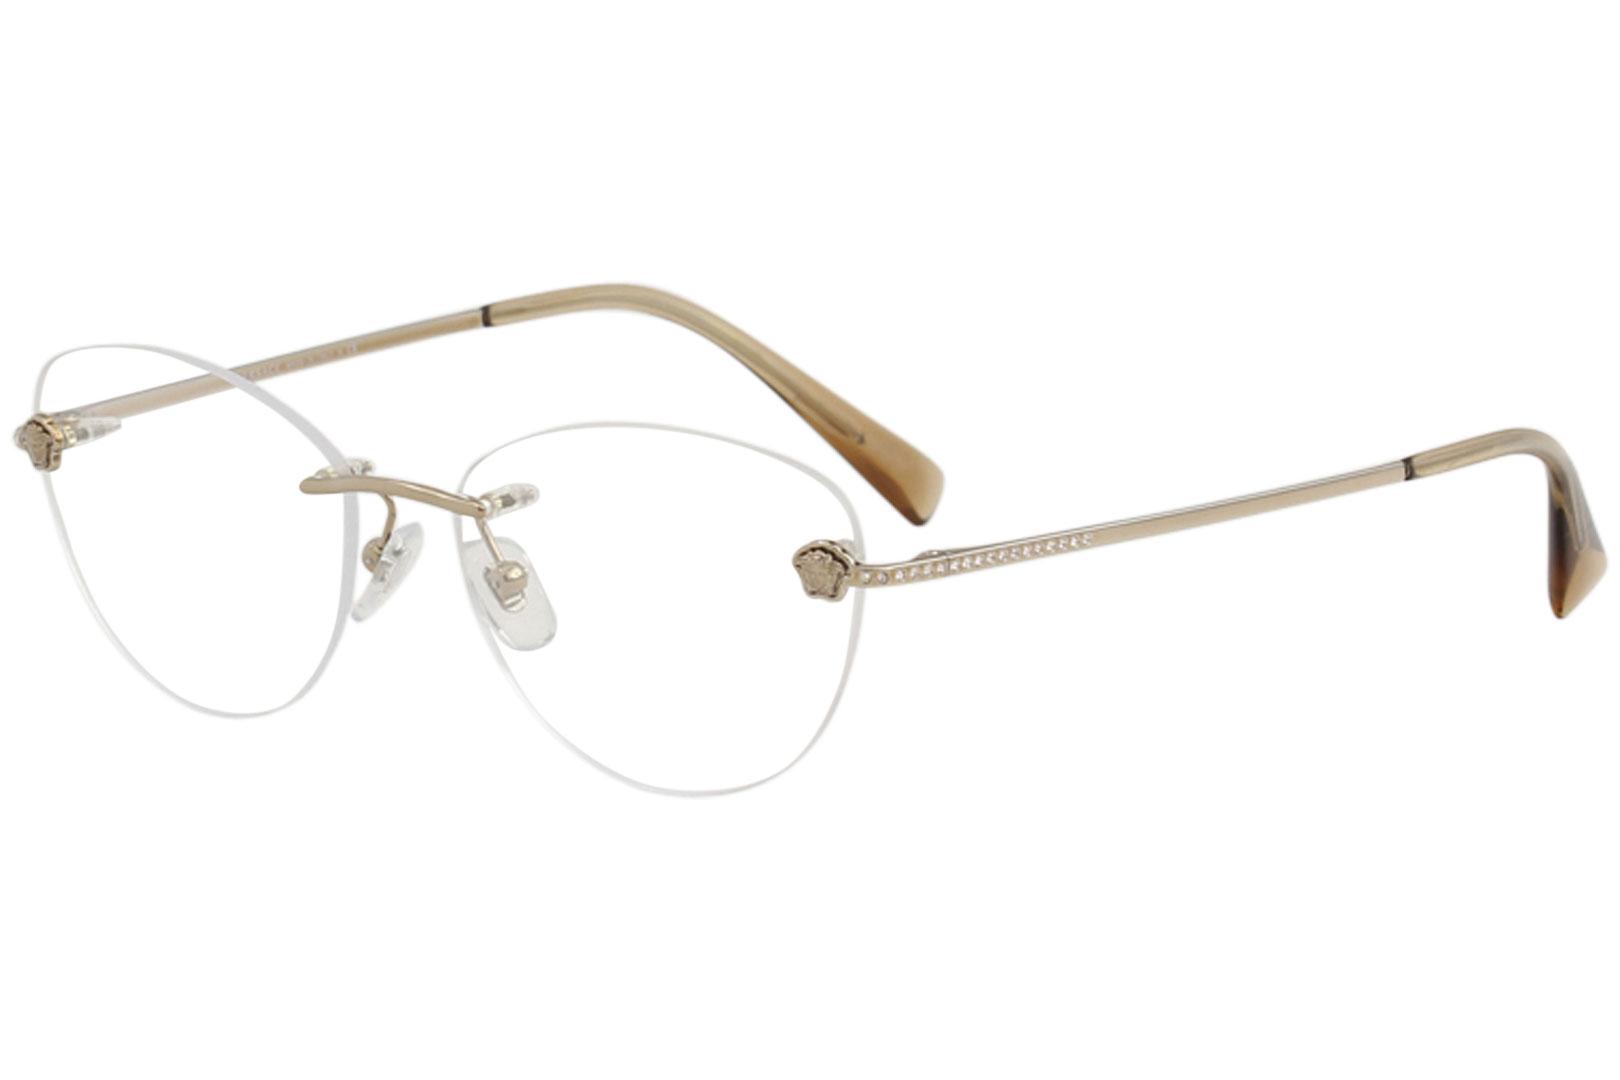 versace rimless eyeglass frames